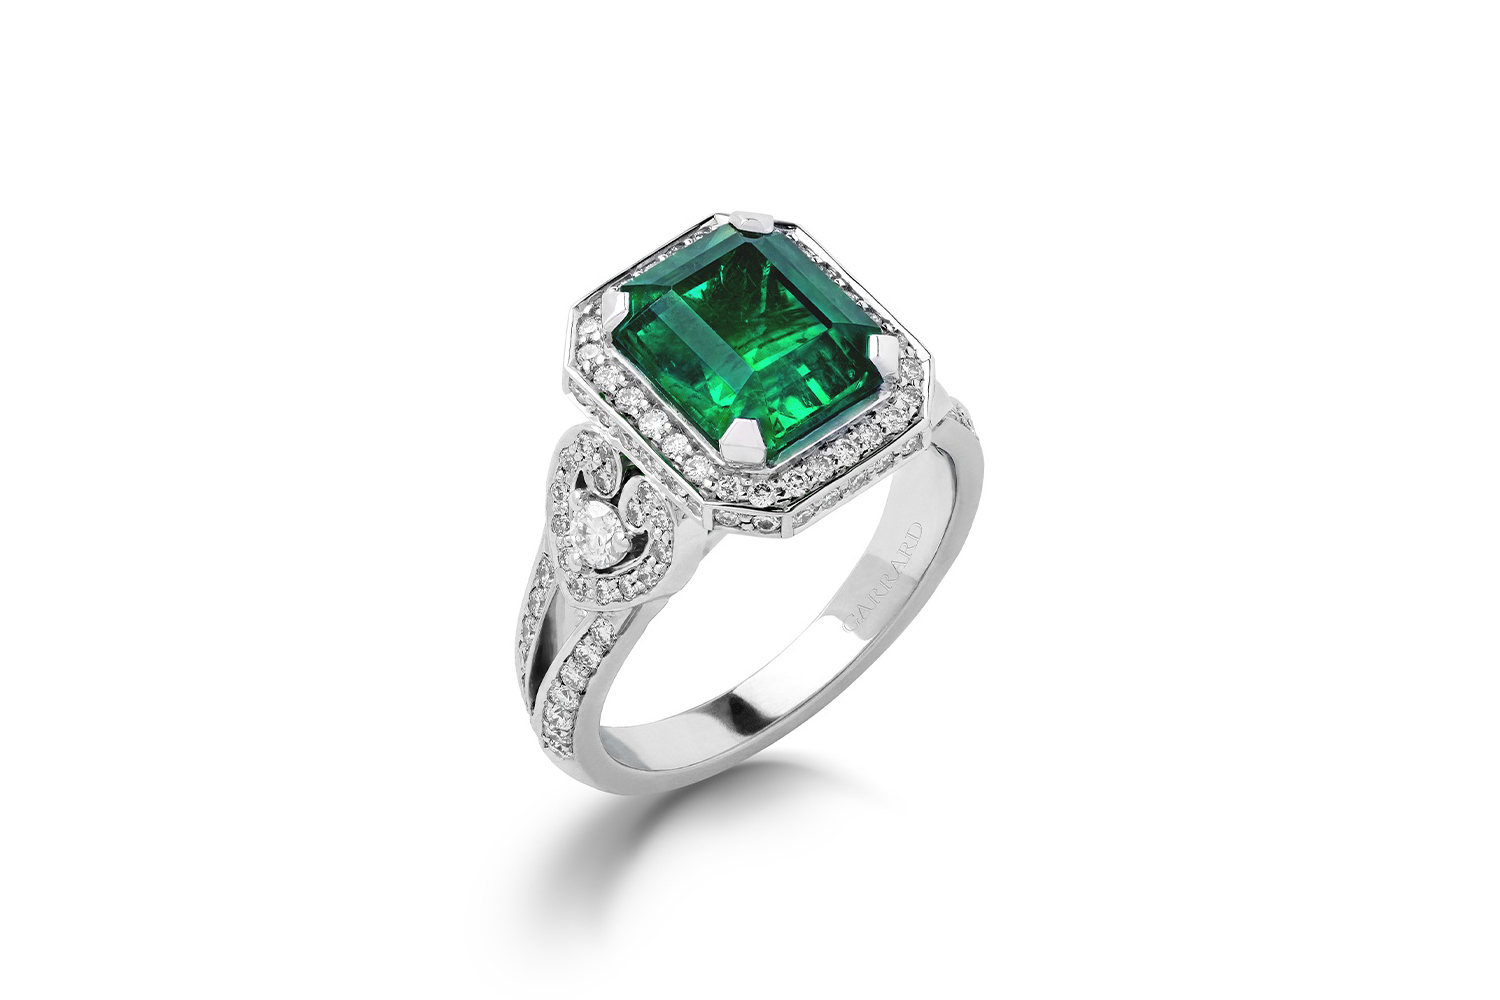 Emerald white. Garrard 1735 Emerald Ring. Кольцо с рубином из коллекции Jewelled Vault, Garrard. Кольцо с квадратным изумрудом. Кольцо с квадратным изумрудом и бриллиантами.